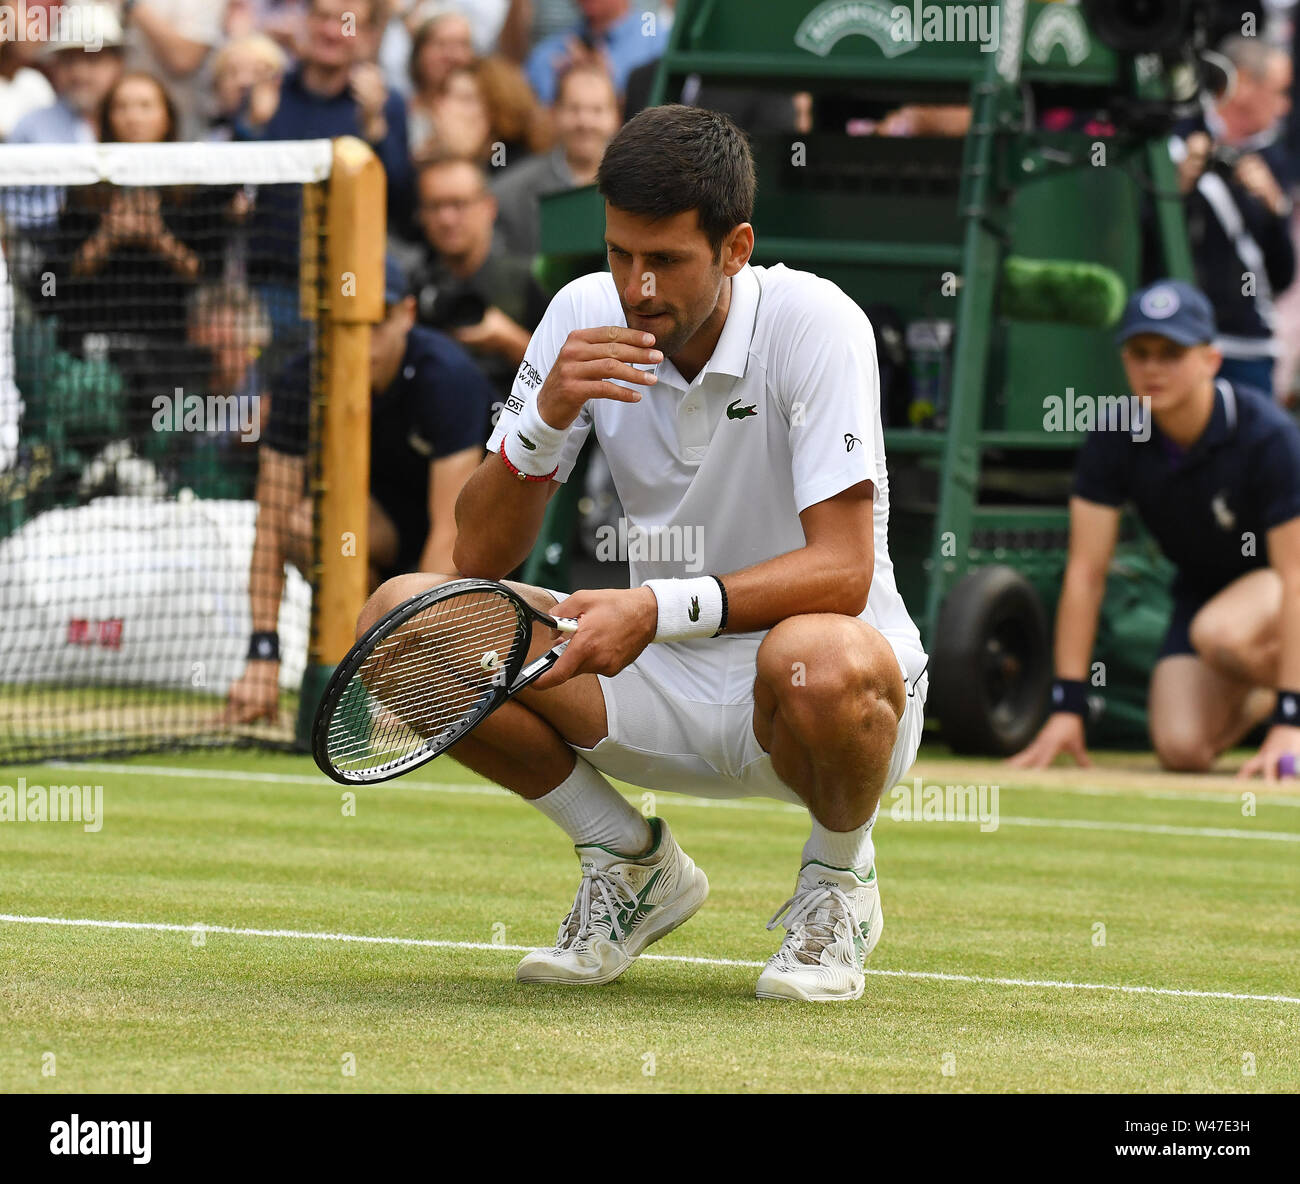 Londres, Inglaterra, 14 de julio de 2019 los campeonatos de Wimbledon 2019 14072019 Novak Djokovic (SRB) gustos "verde, verde hierba del hogar" después de ganar Mens Foto de stock